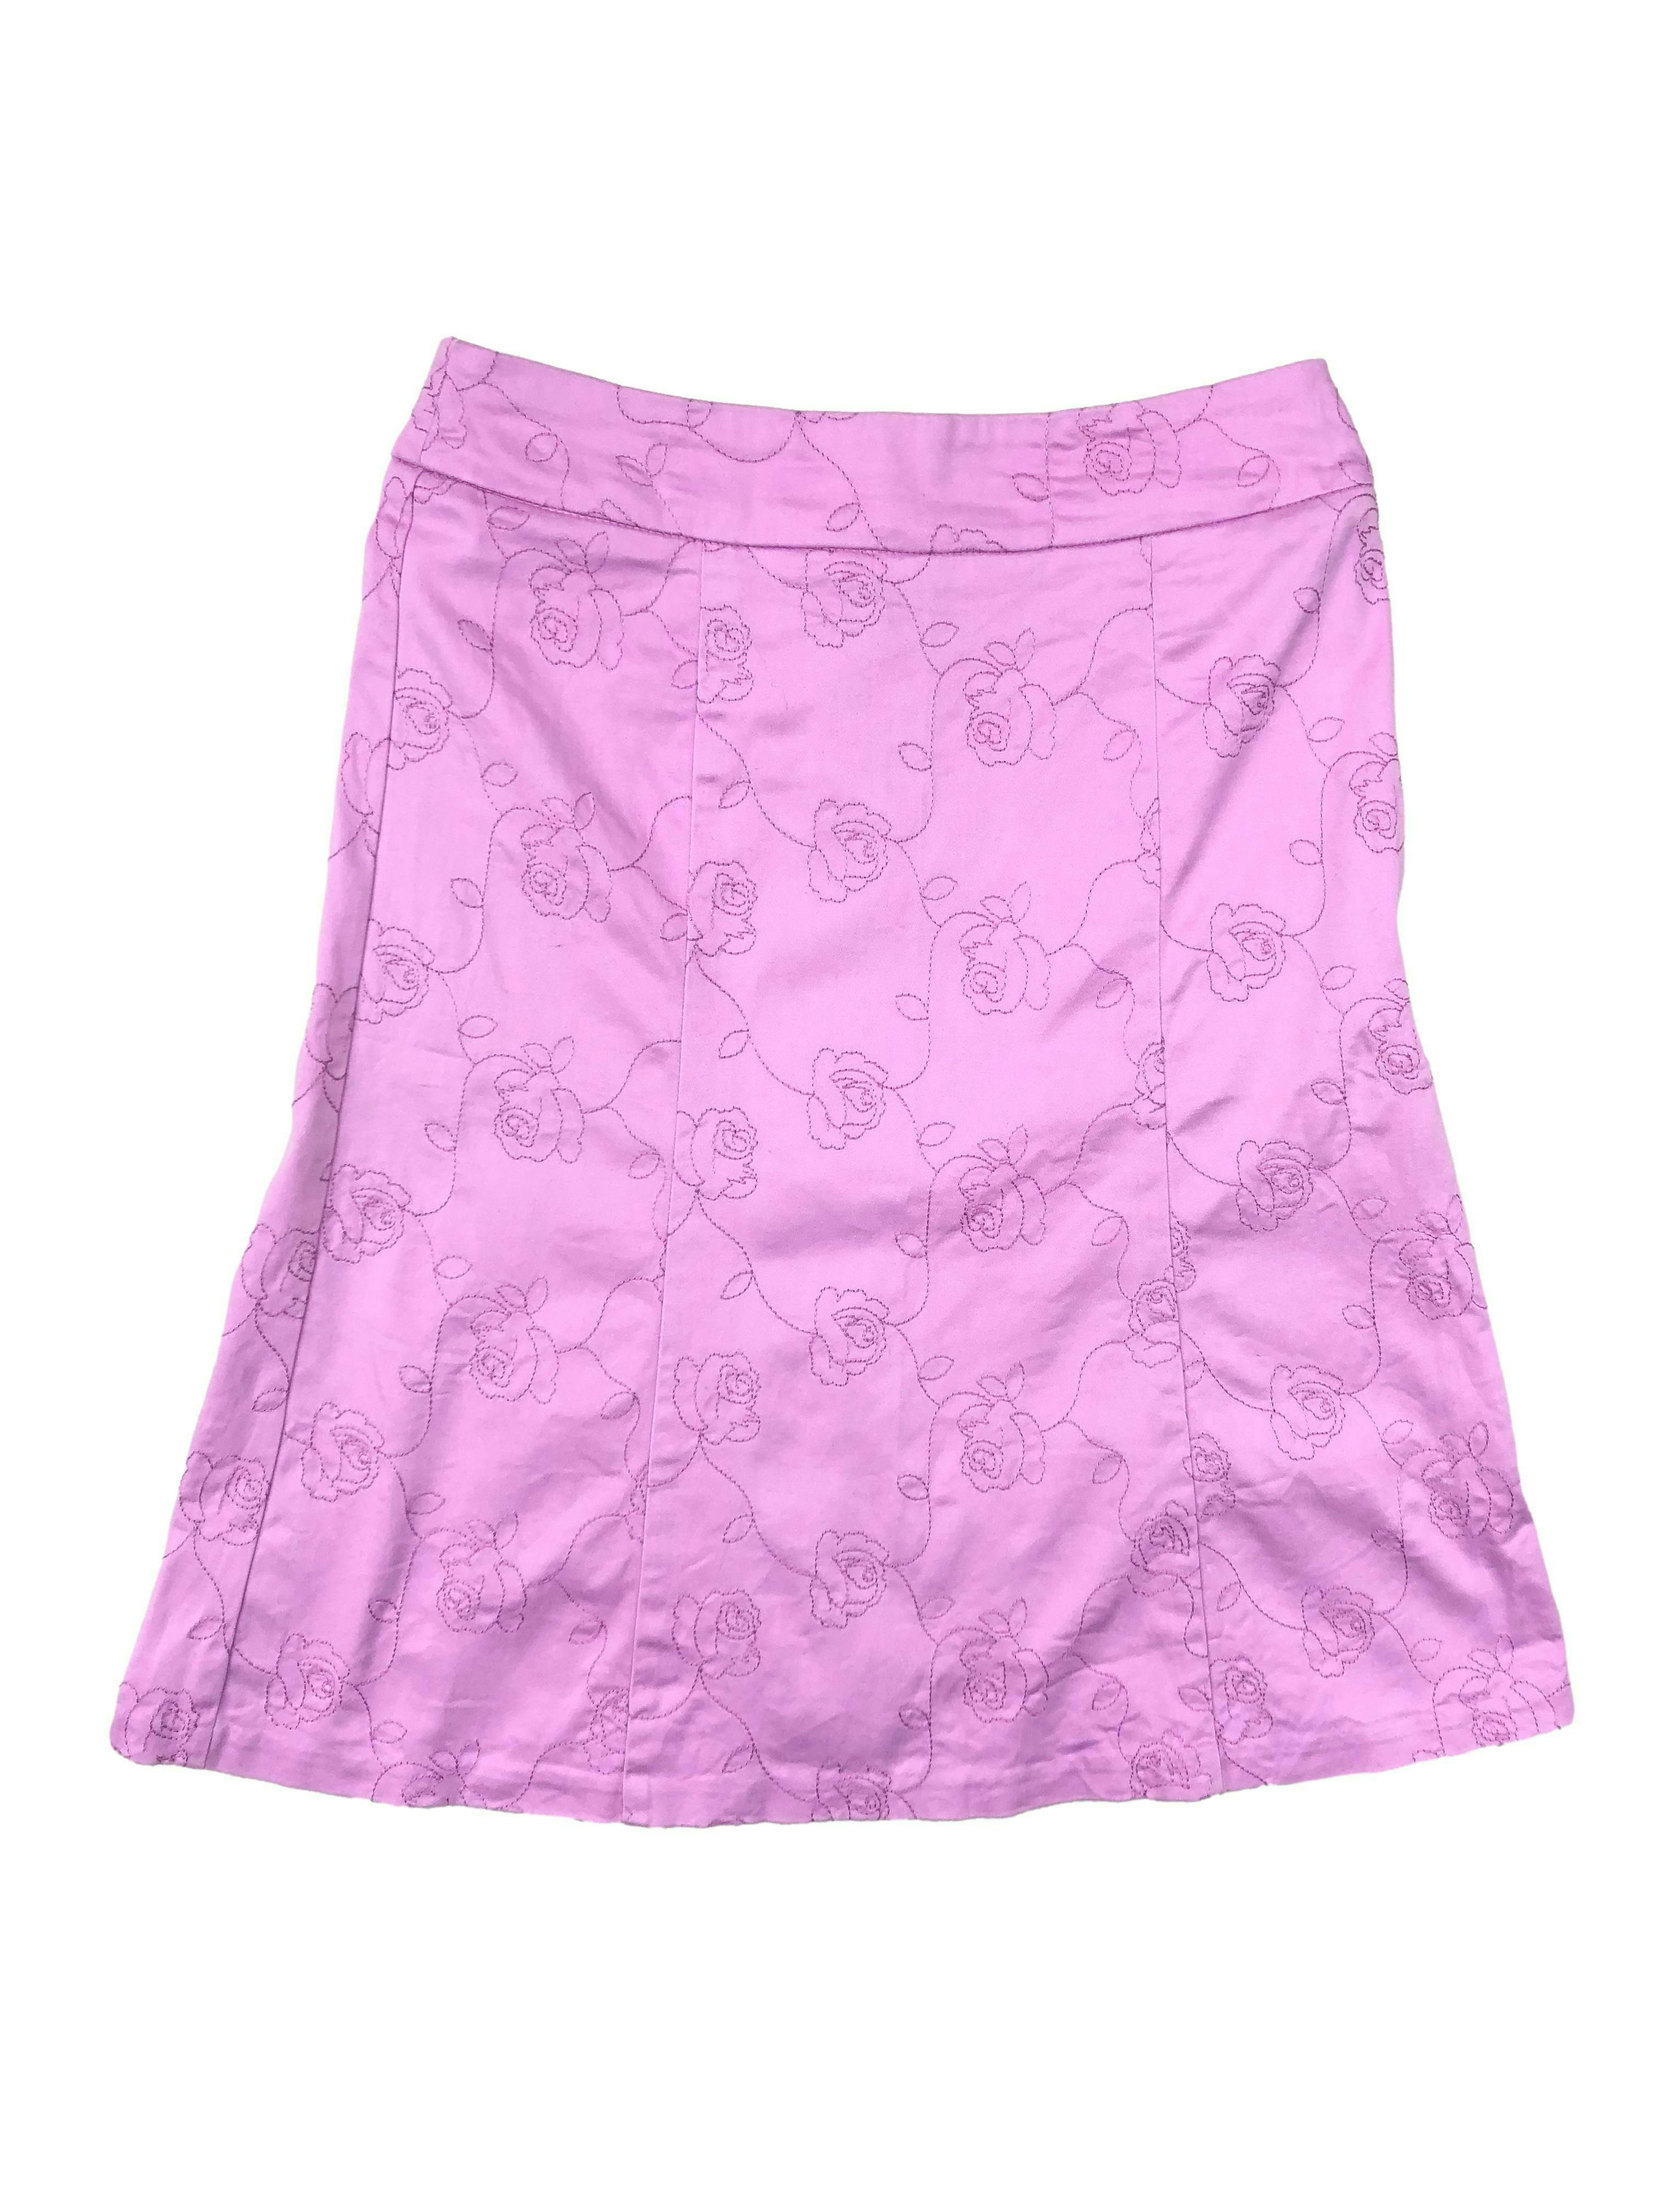 Falda rosada ETC. 97% algodón, corte en A con bordado de rosas y cierre posterior invisible. Cintura 68cm, Largo 56cm.